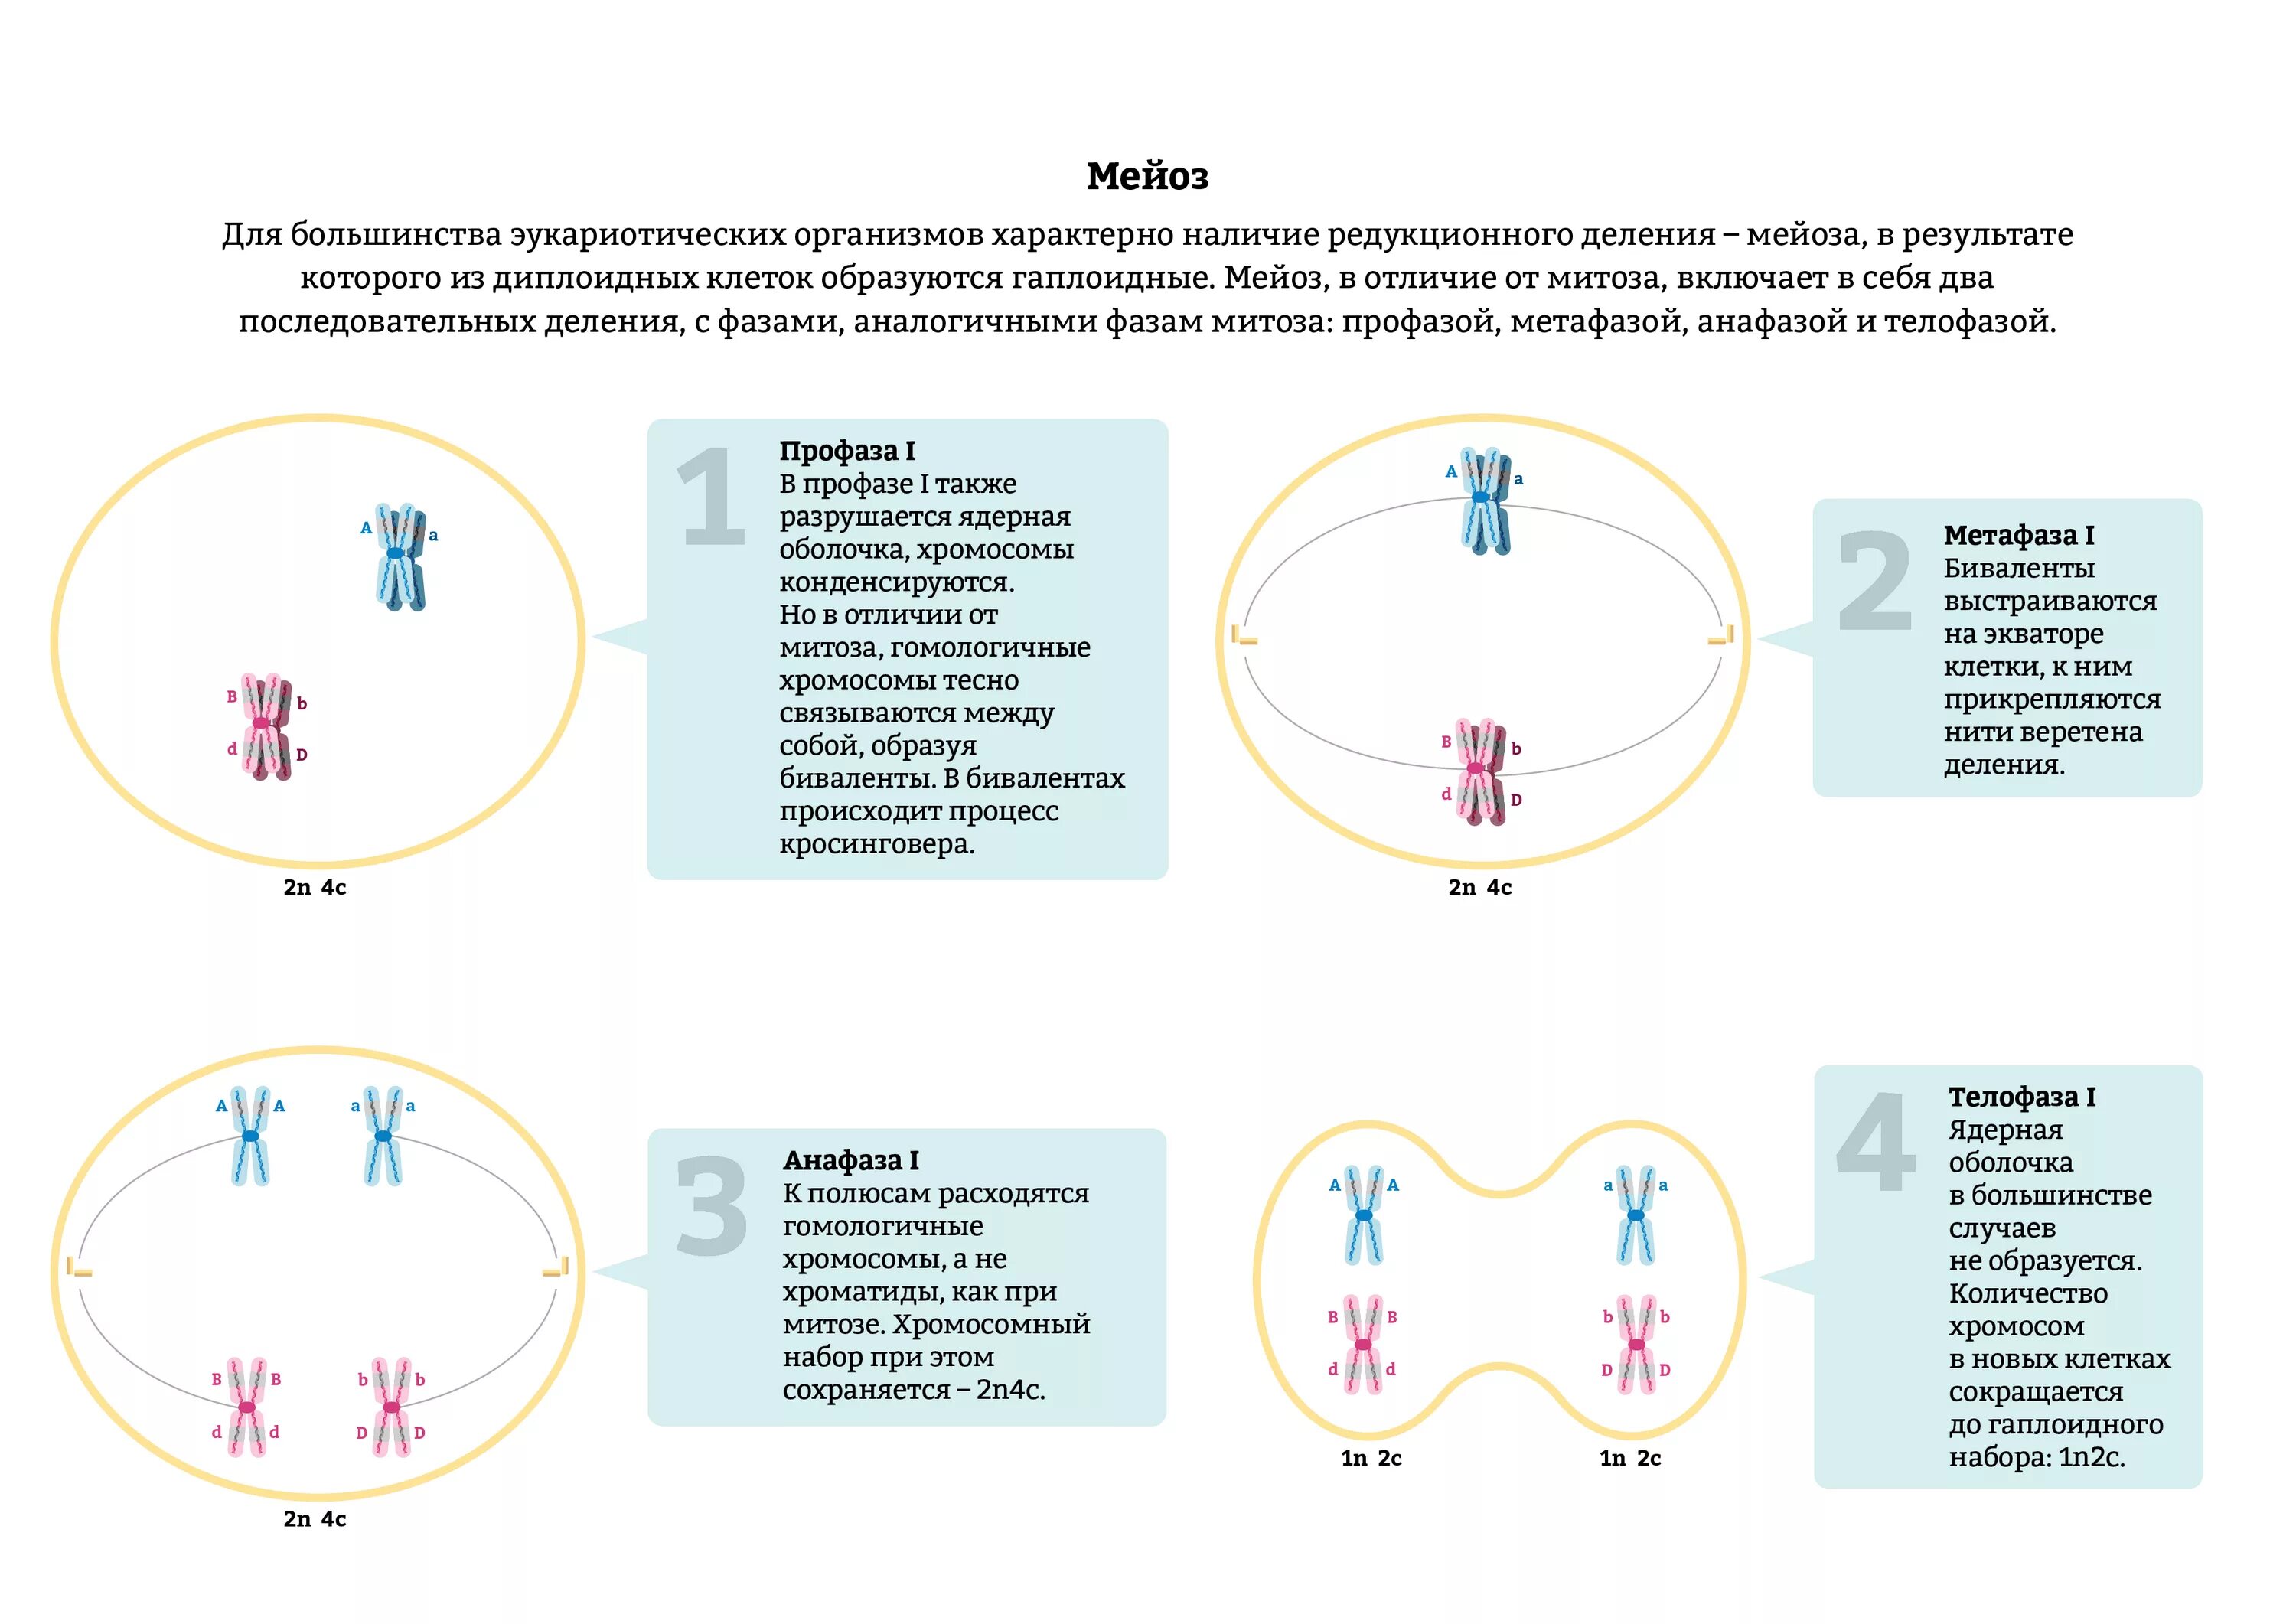 Анафаза мейоза 1. Гаплоидный набор хромосом в мейозе 1. Анафаза 2 мейоза схема. Второе деление мейоза набор хромосом. Гаплоидная клетка с двухроматидными хромосомами